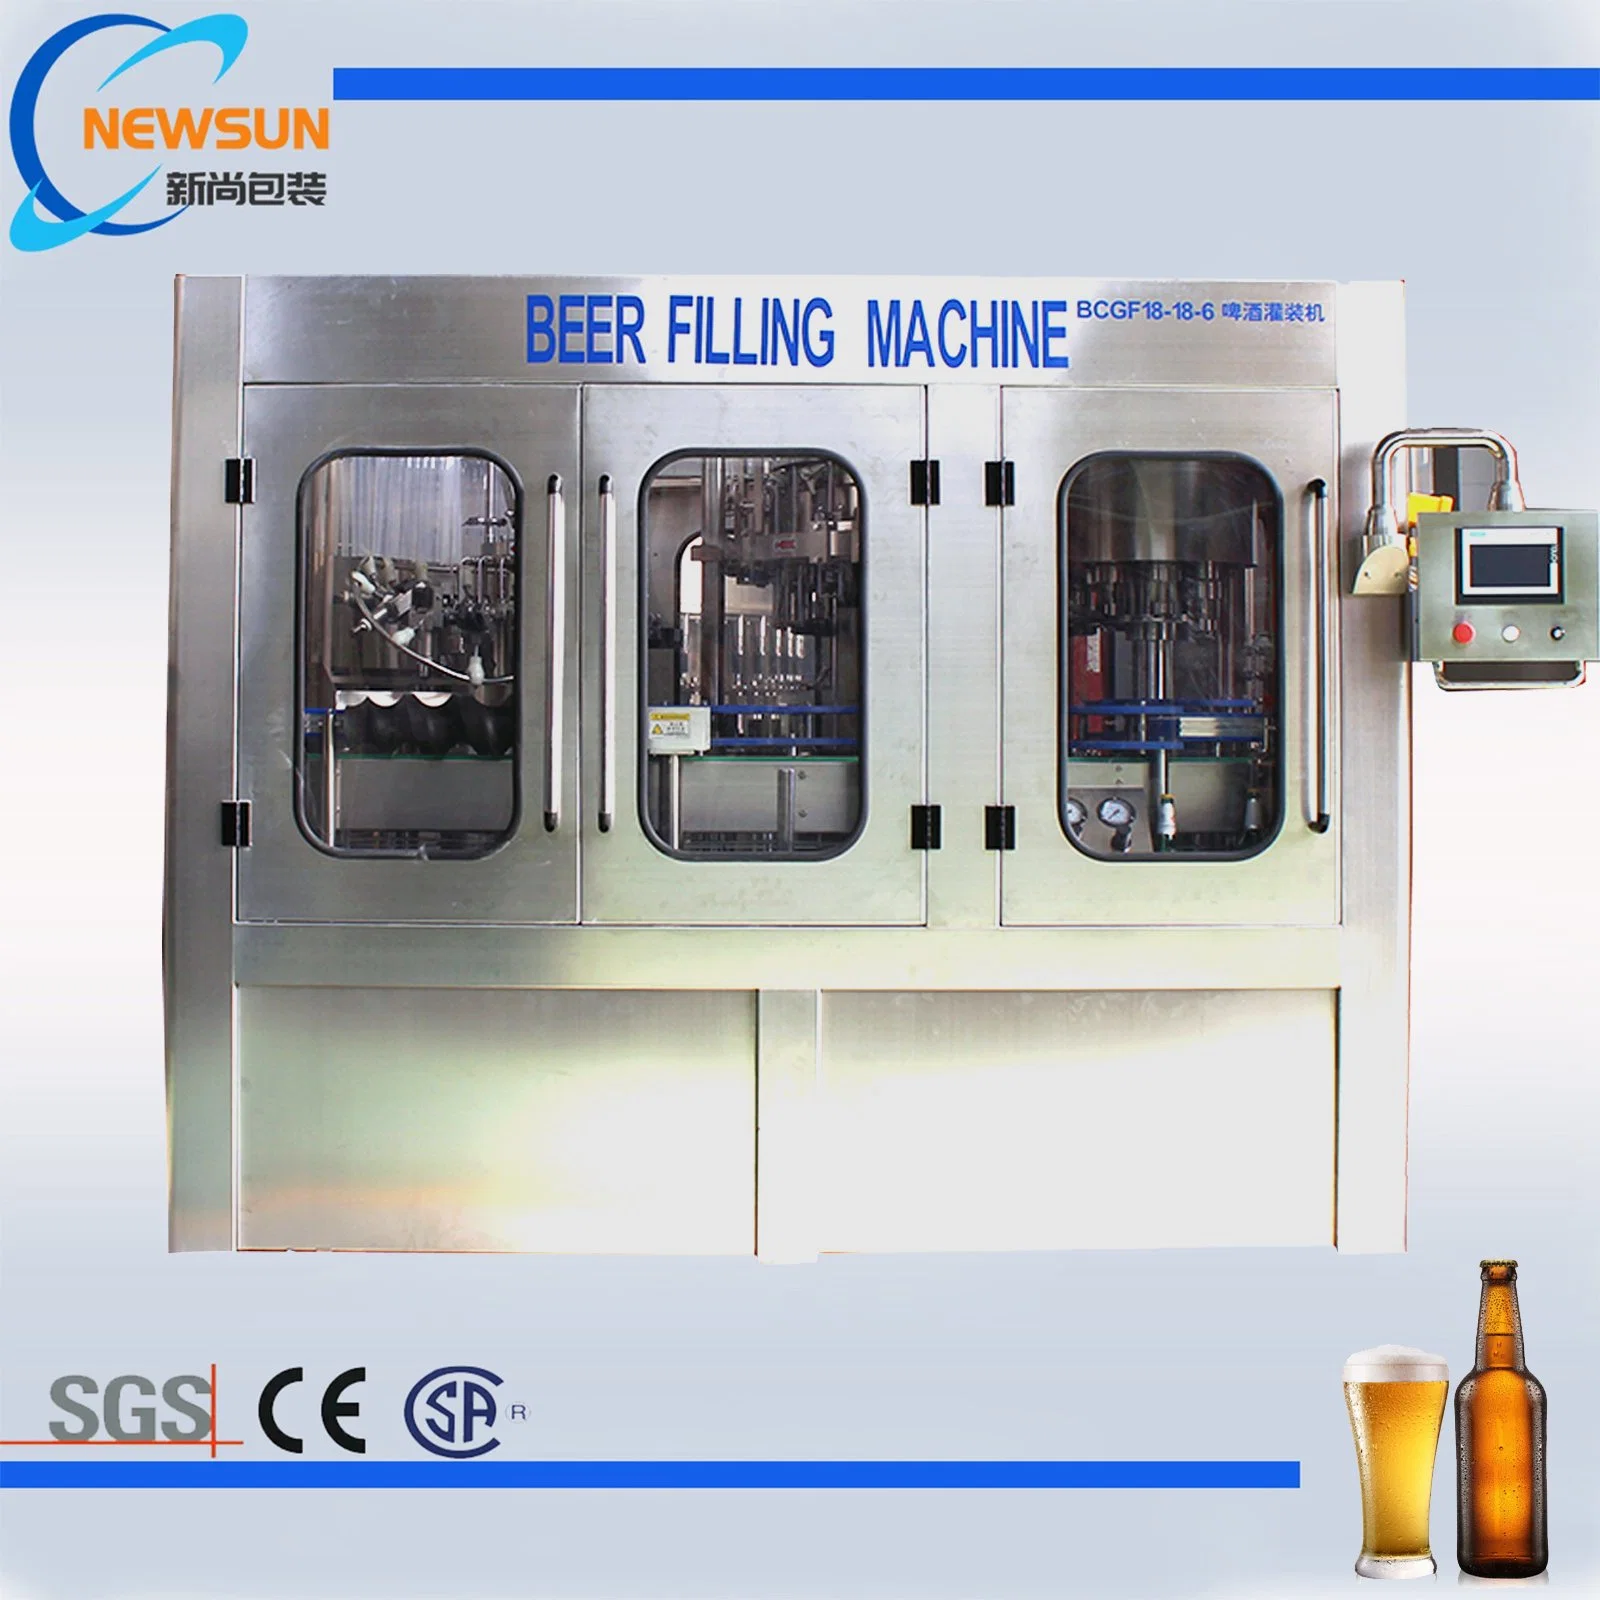 Newsun constructeur de la machine automatique de l'eau potable Usine d'Embouteillage de boissons de la bière de l'équipement de moulage par soufflage PET bouteille en verre de l'étiquetage de lavage des machines de remplissage